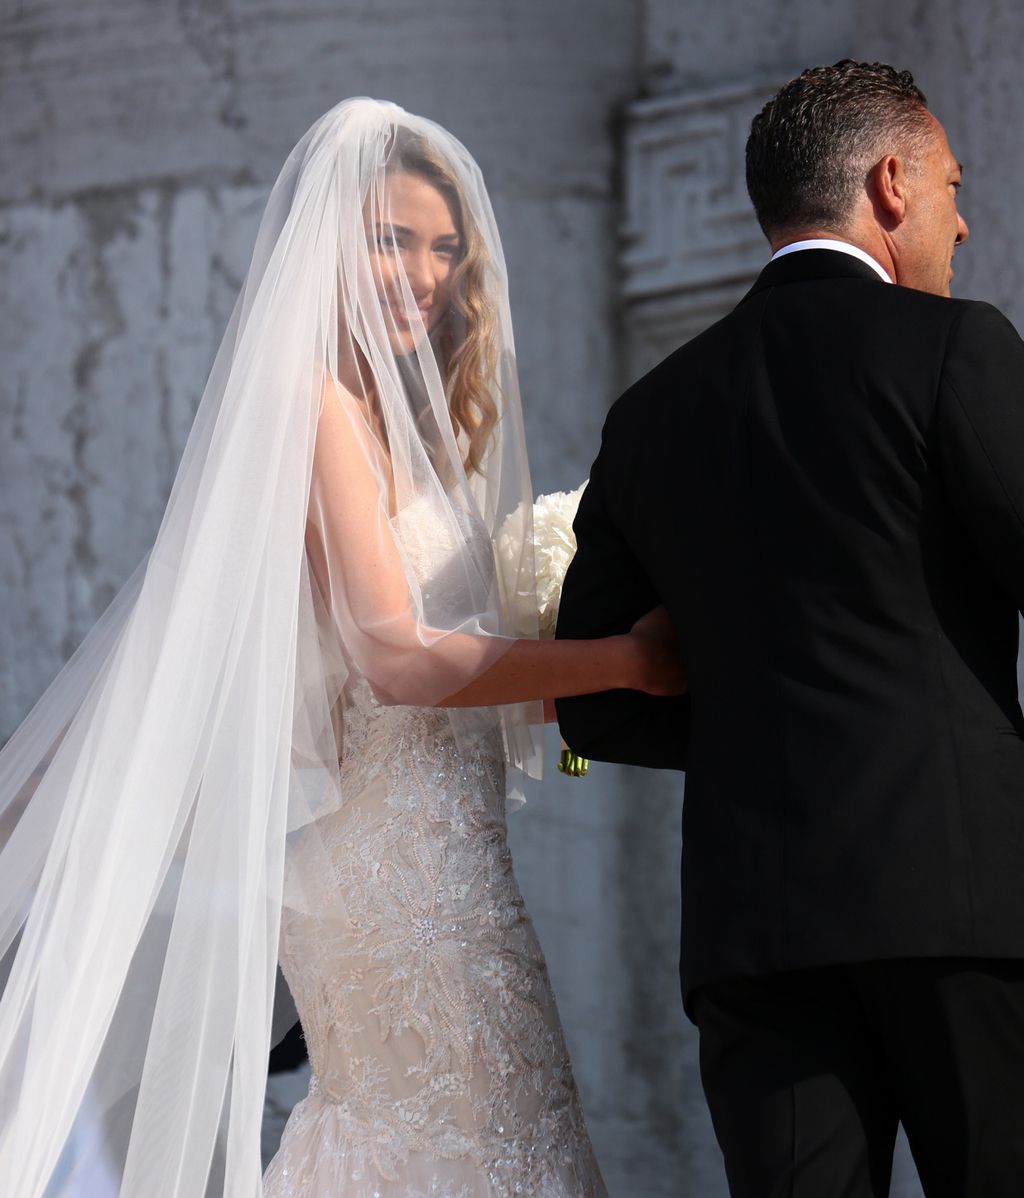 Las imágenes de la boda más romántica de Álvaro Morata y Alice Campello en Venecia